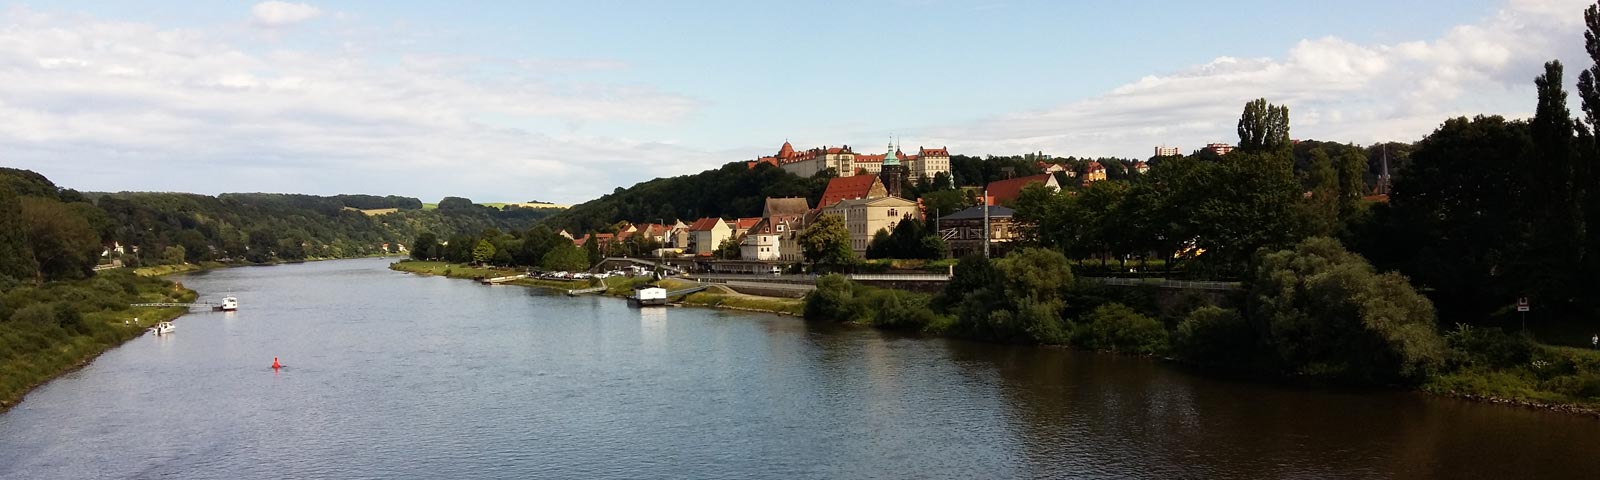 Ferienwohnungen in Pirna